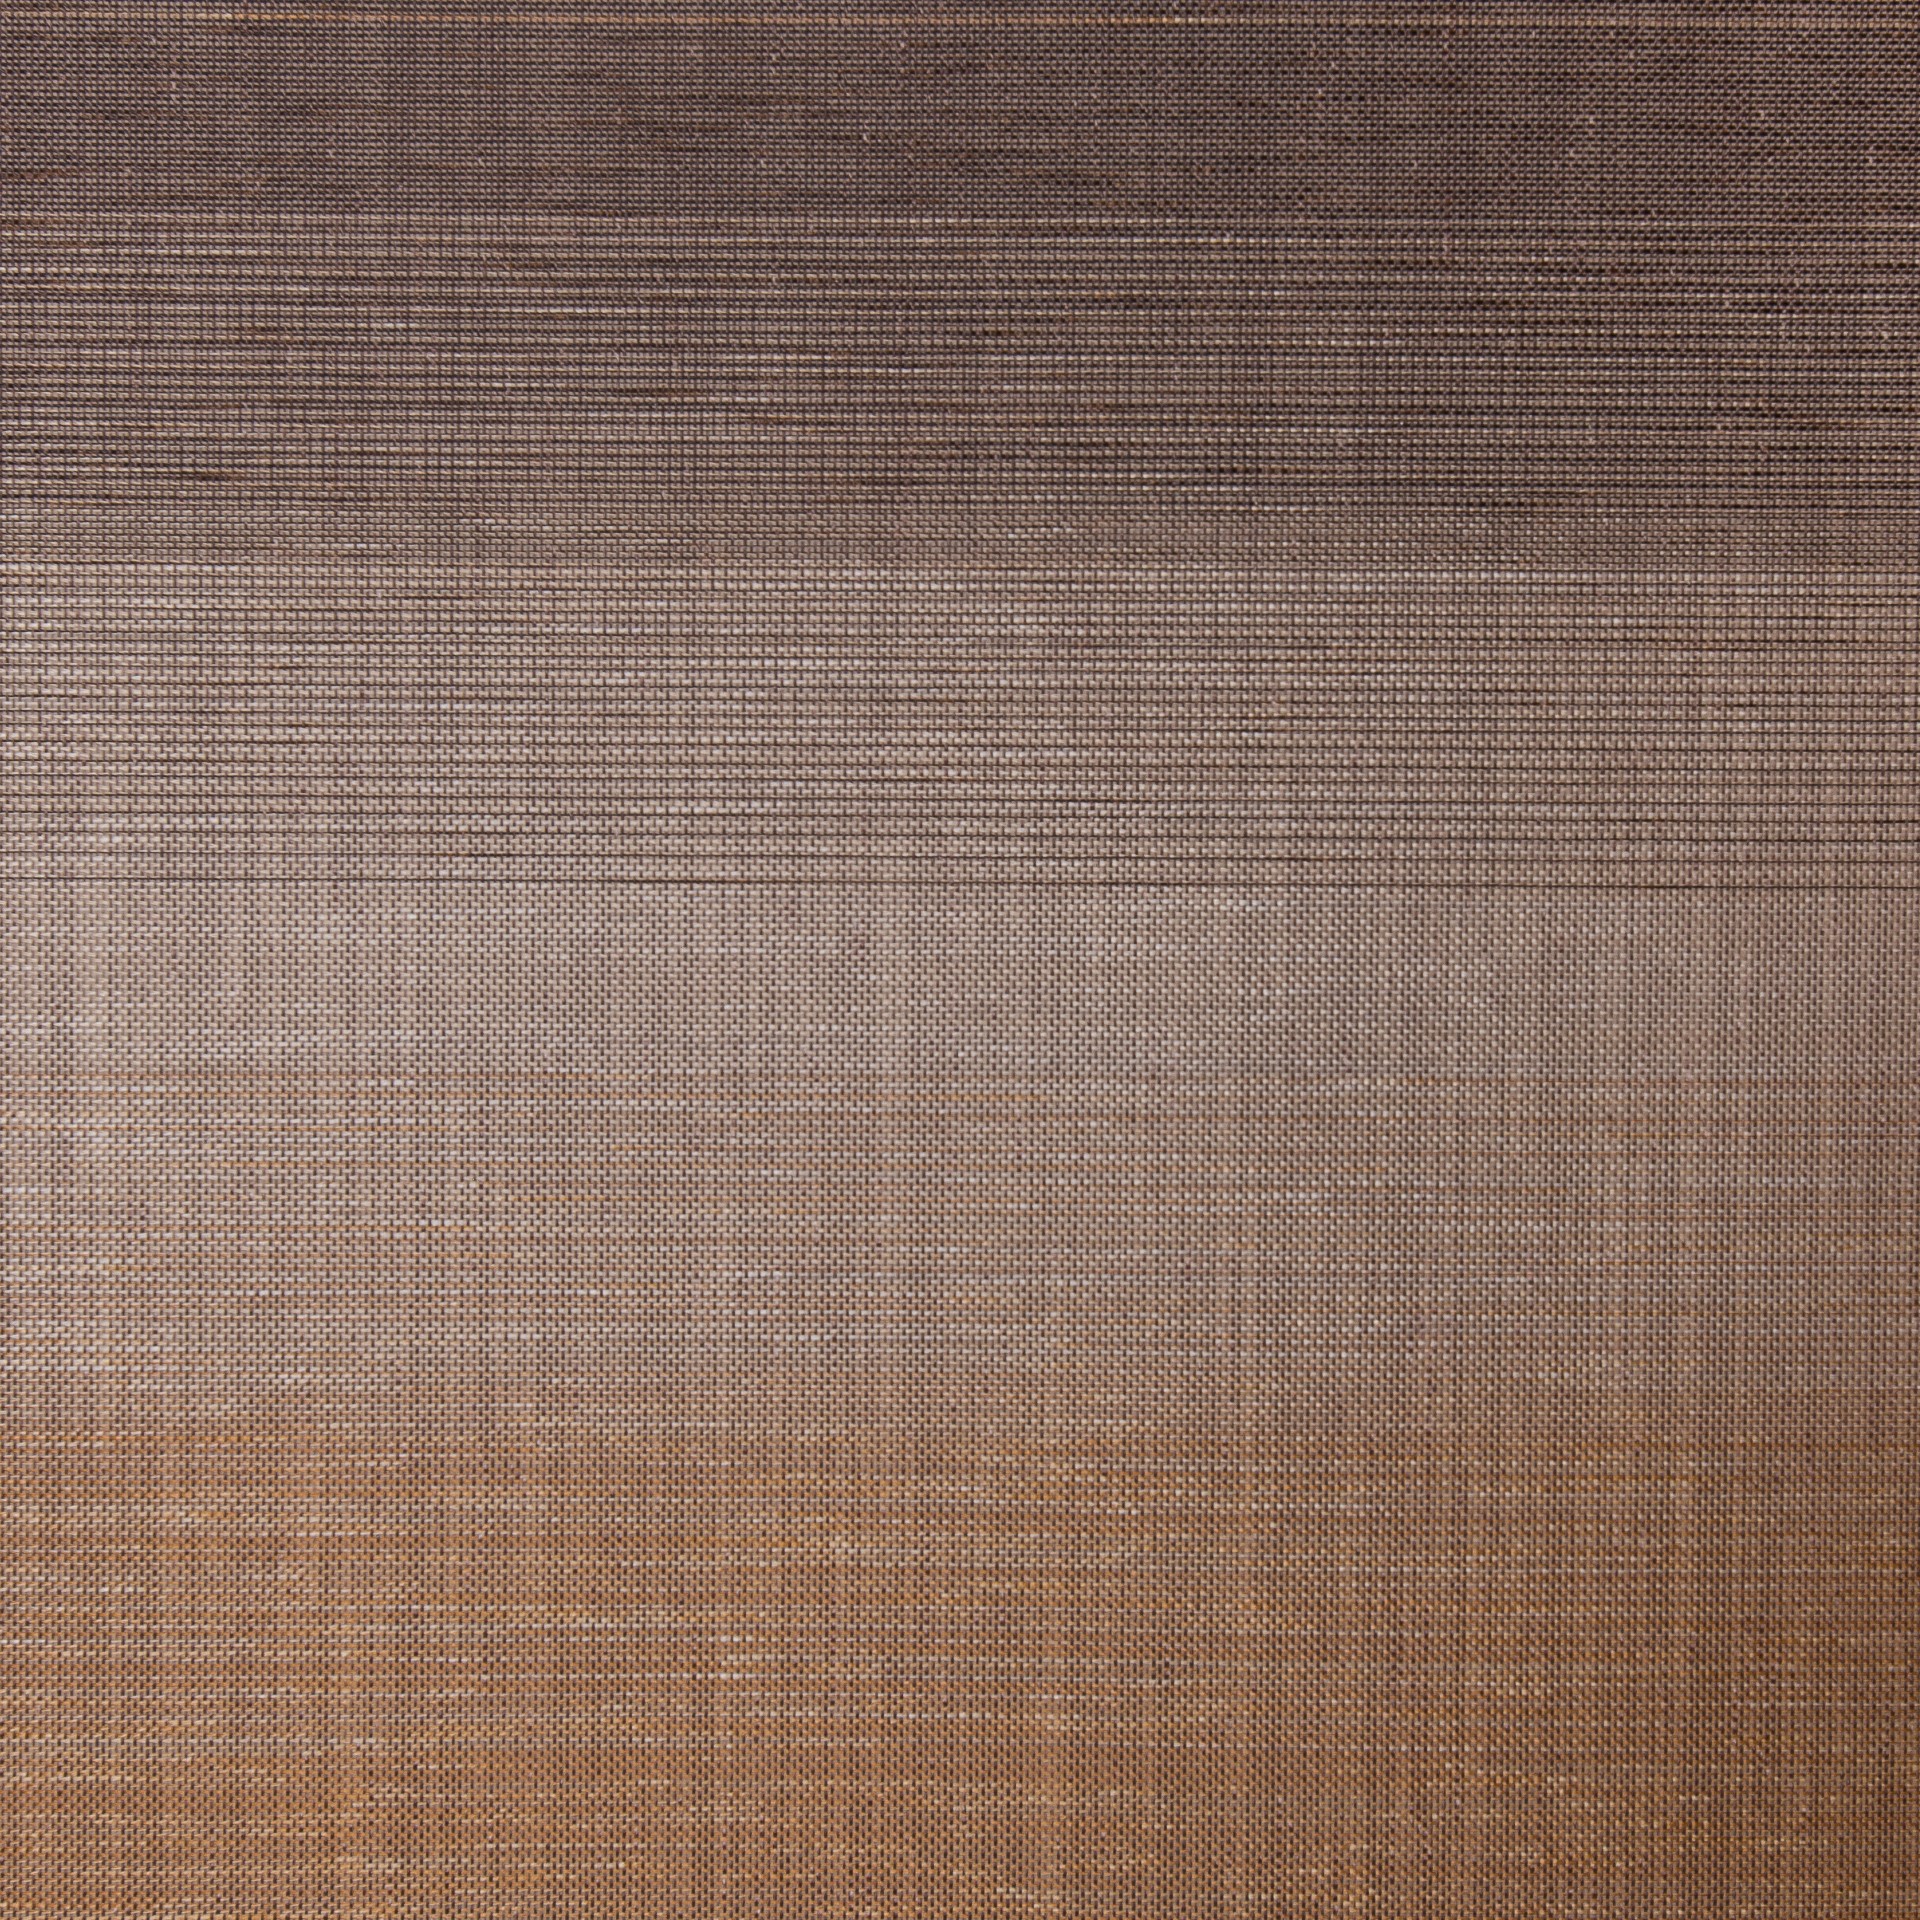 Tokyo Translucent Roller Blind Brown Mink Fabric Detail